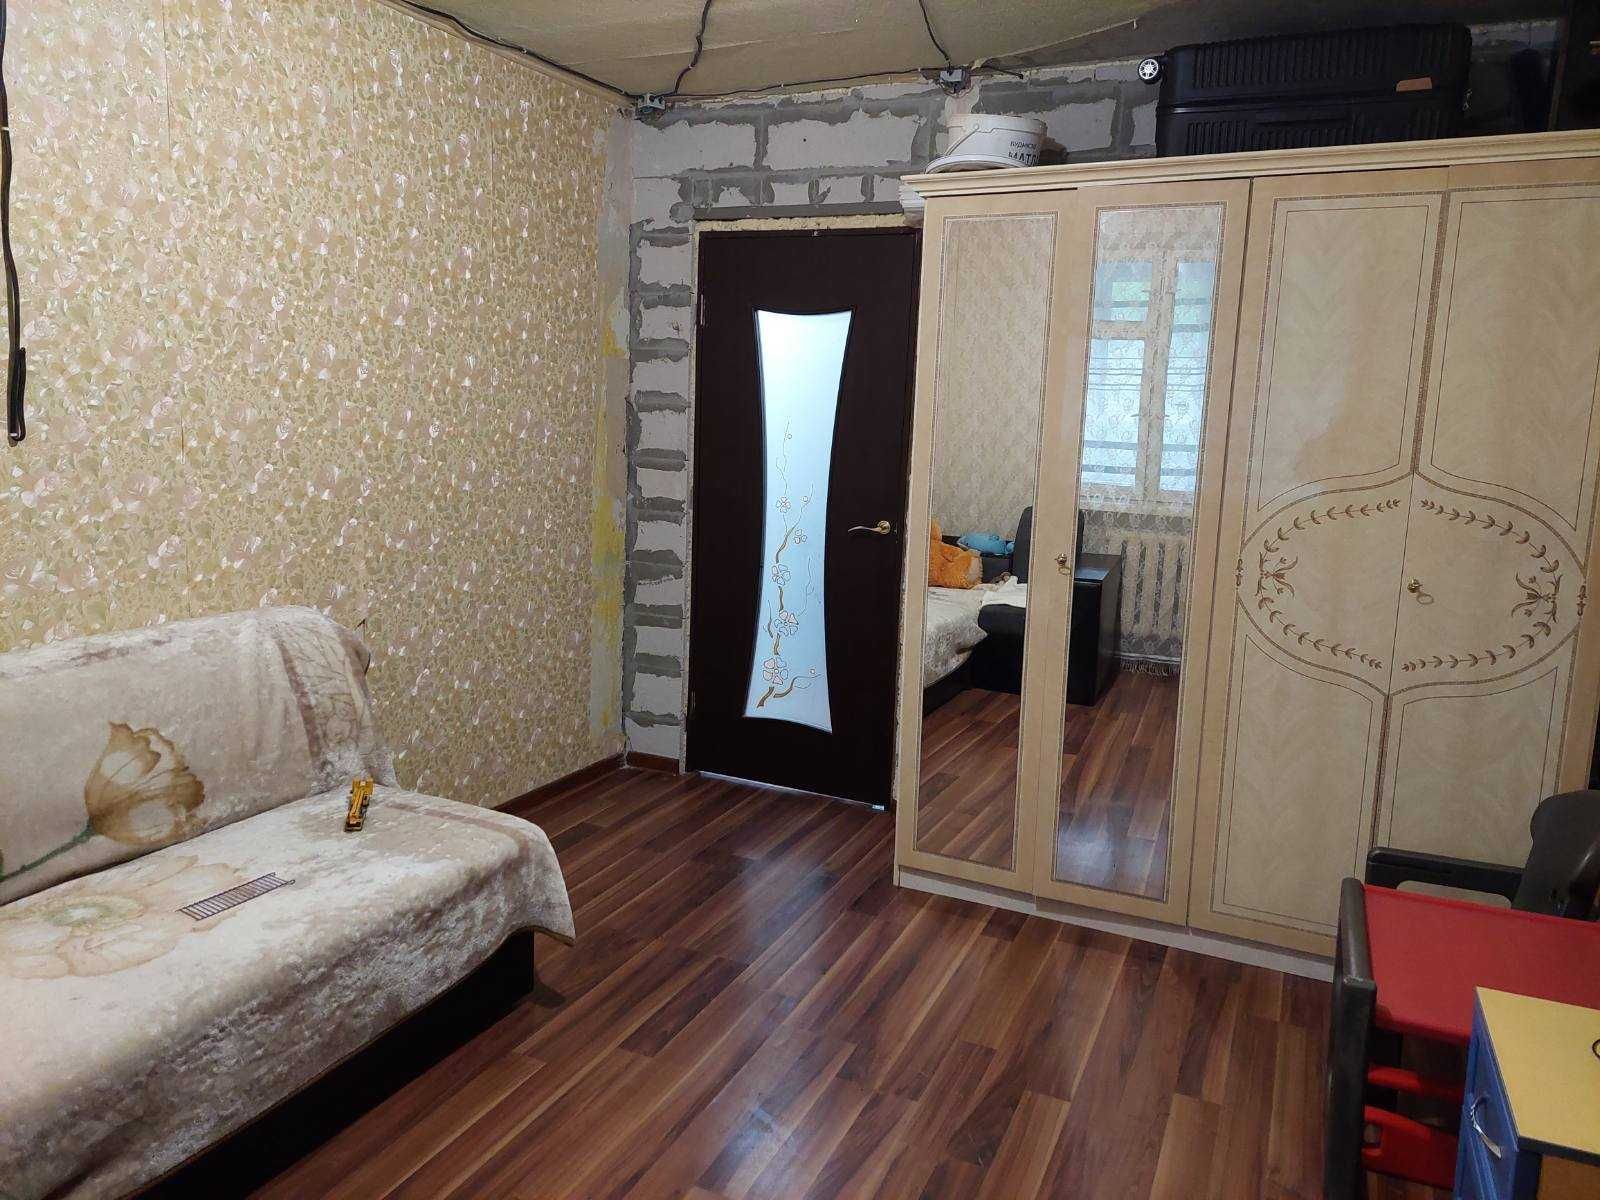 Продам 2 комнатную квартиру Одесская Od5